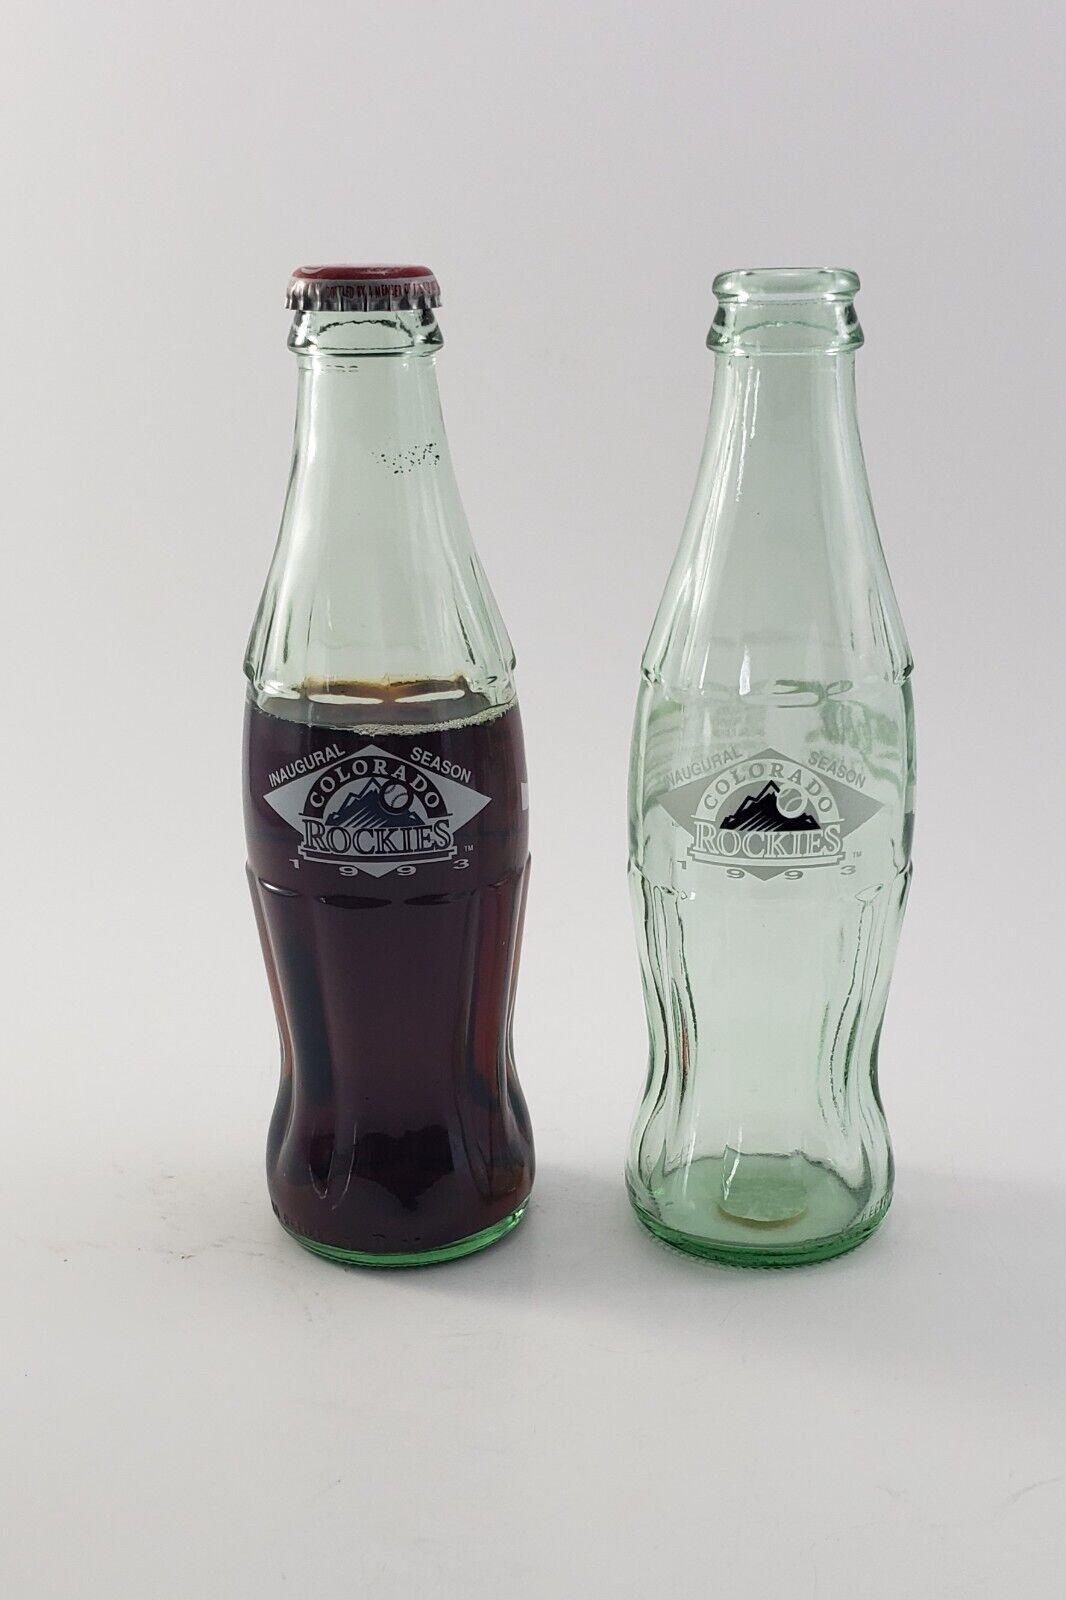 Coca-Cola Classic Colorado Rockies Inaugural Season 1993 Bottles (TWO)